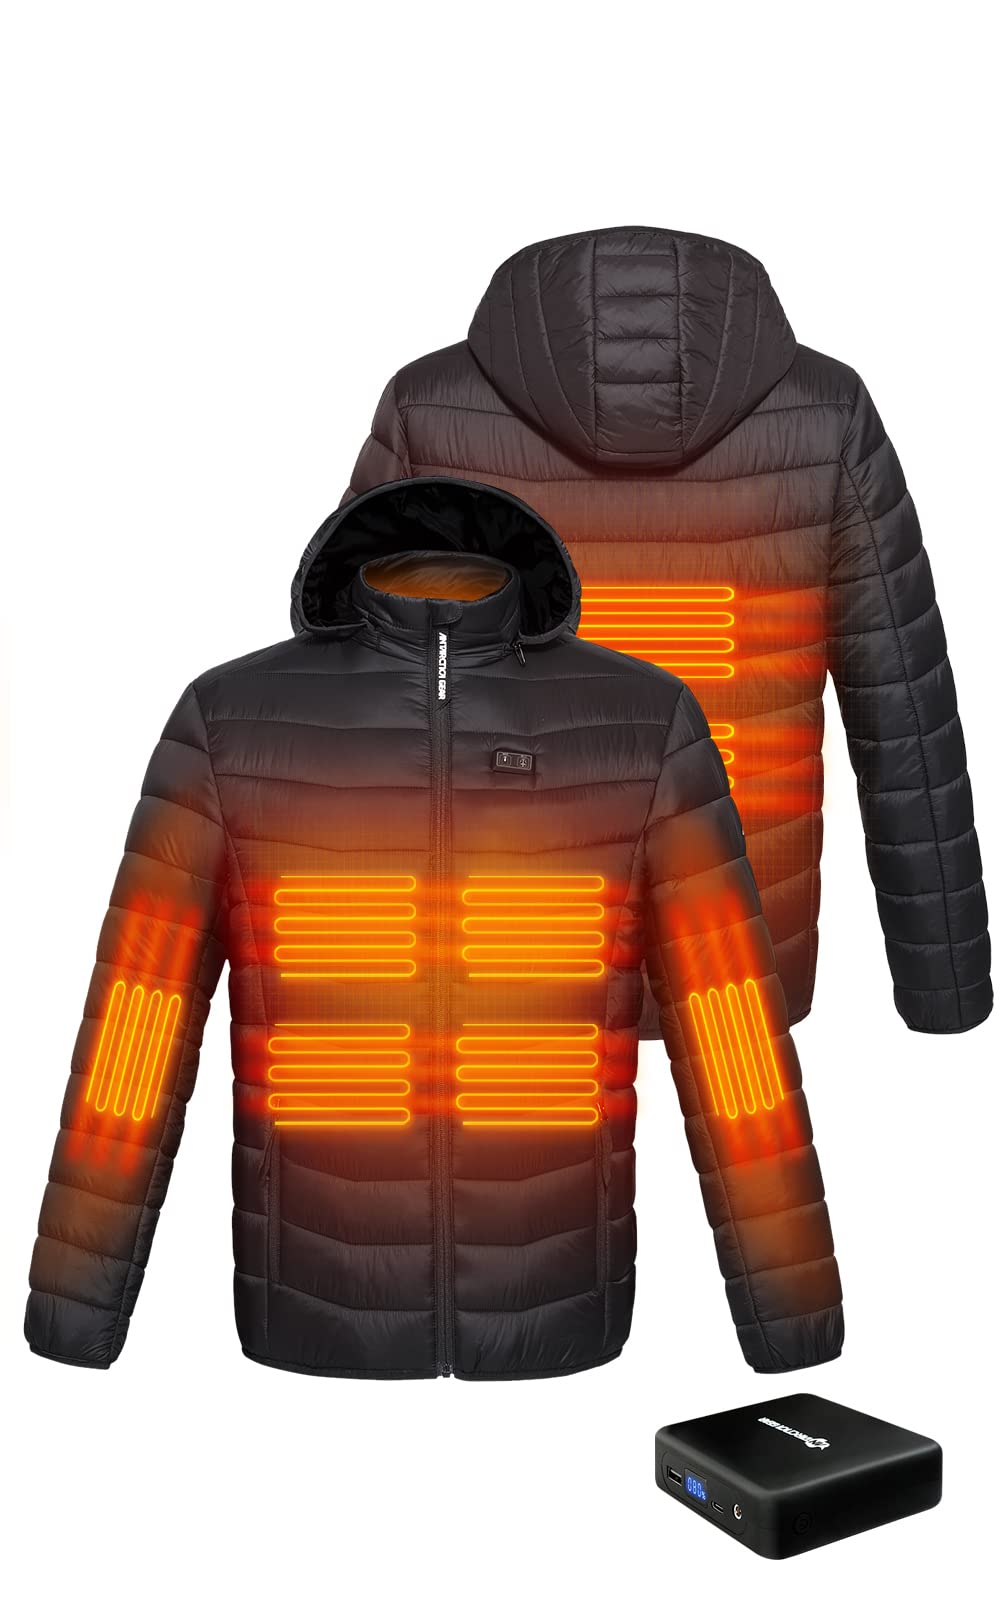 ANTARCTICA GEAR Heated Jacket Lightweight Heating Jackets For Men & Women